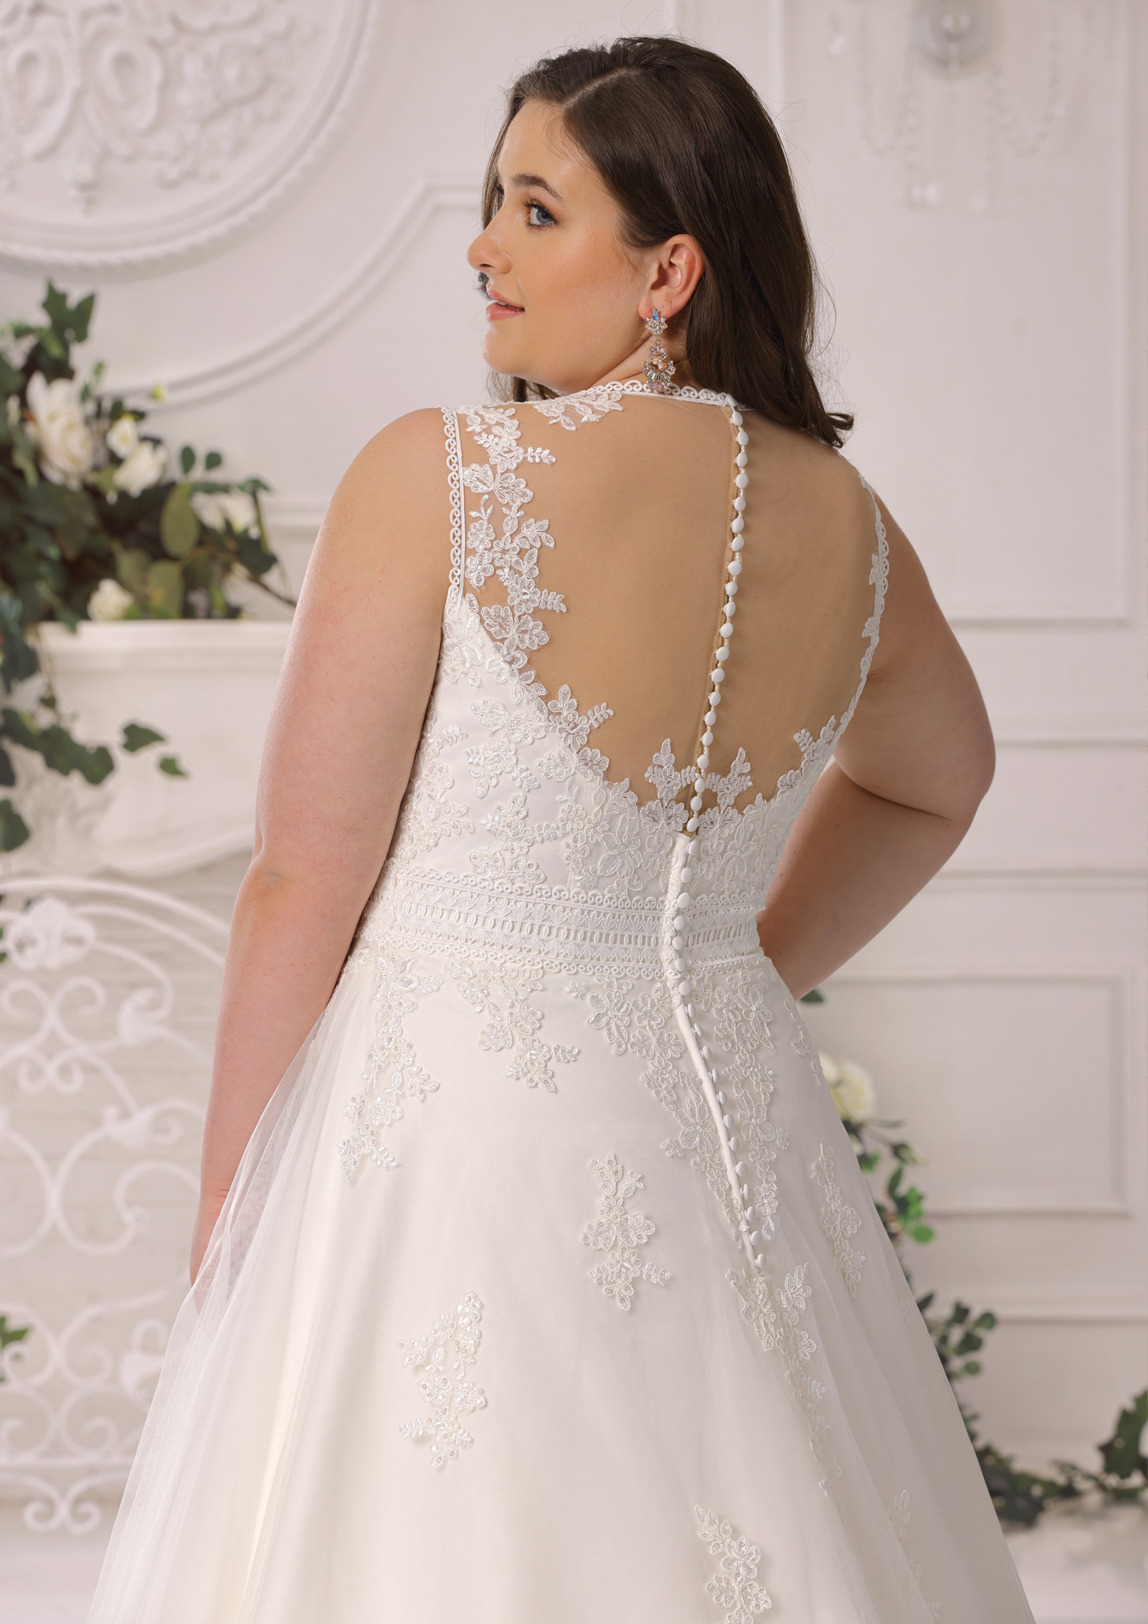 Brautkleid Hochzeitskleid in A Linie für curvy grosse Grössen von Ladybird Modell LS722012 mit V Ausschnitt und breiten Trägern Spitzen Applikationen Bild 2